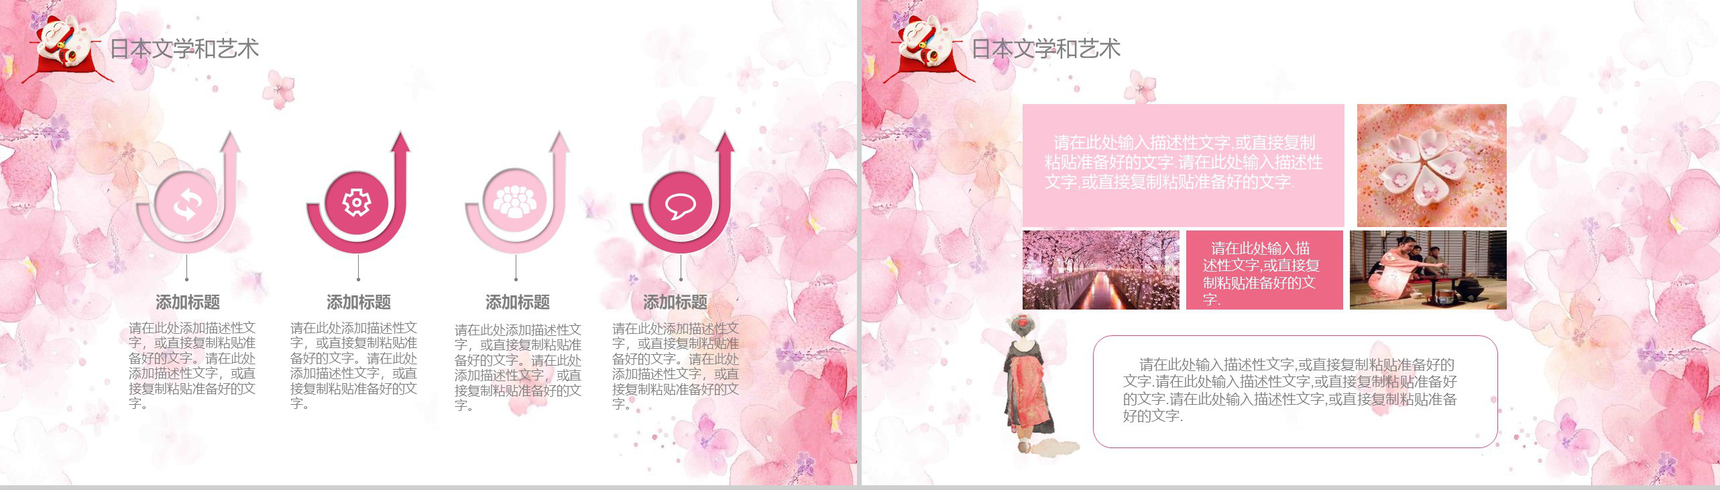 粉色日系和风日本文化介绍PPT模板-8